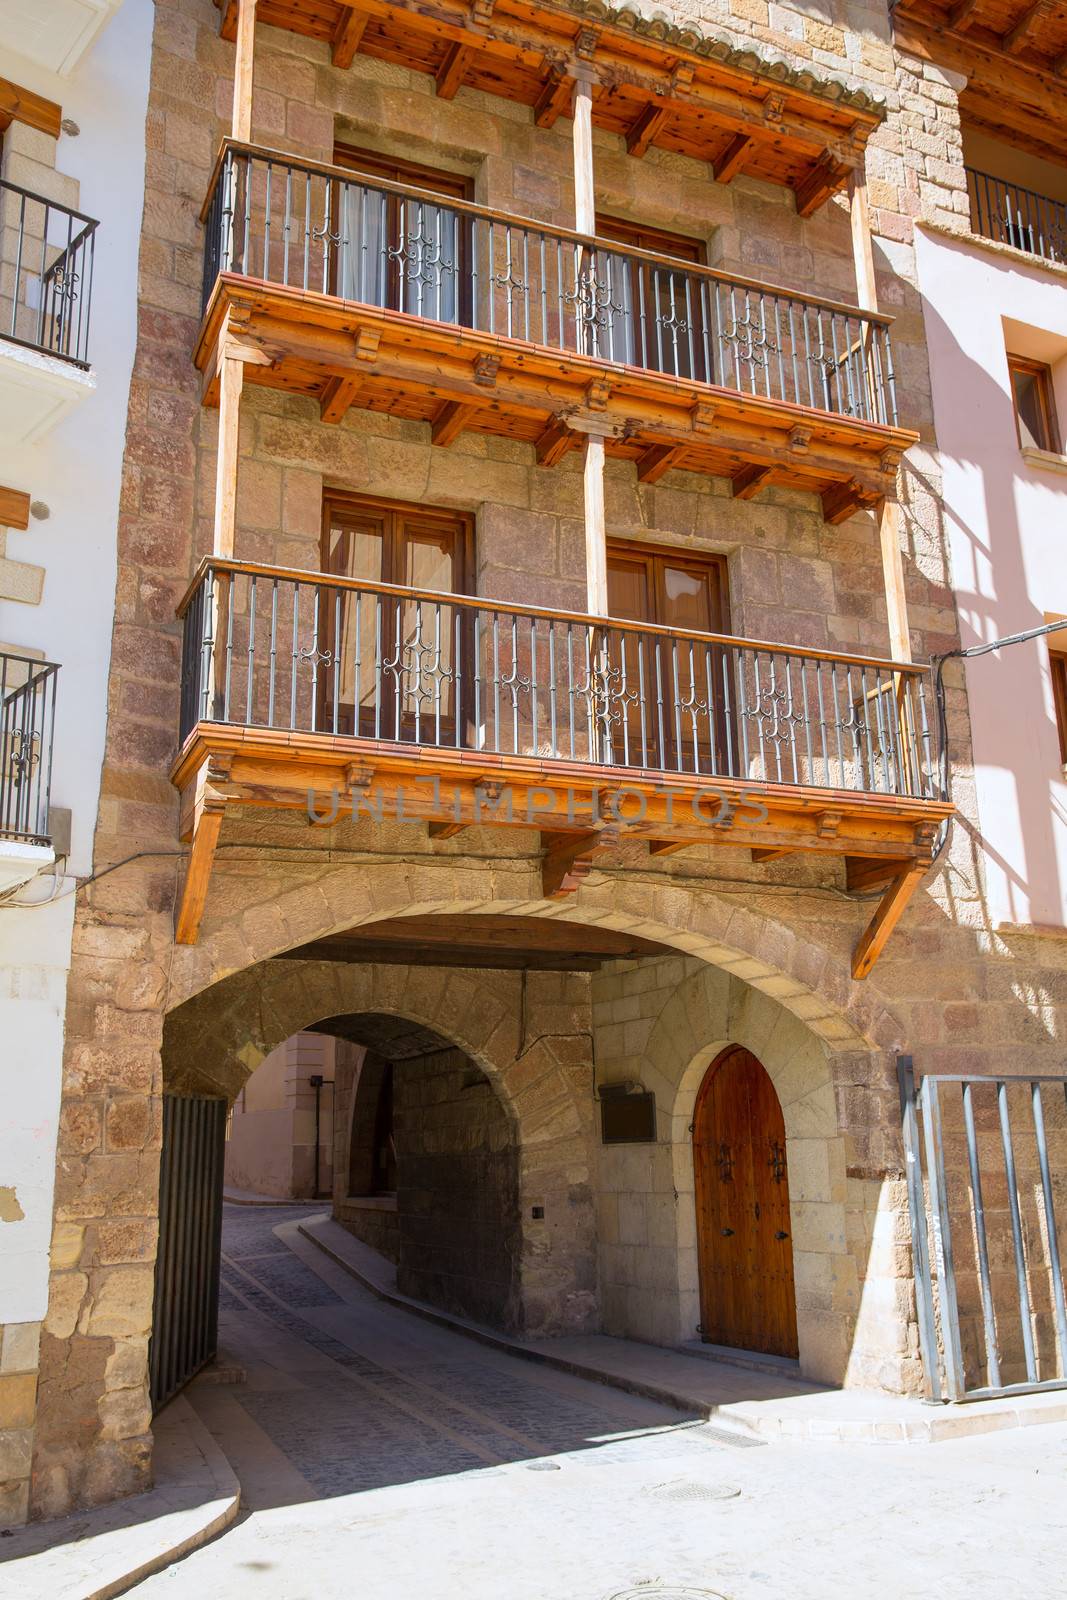 Mora de Rubielos in Teruel Aragon stonewall village by lunamarina